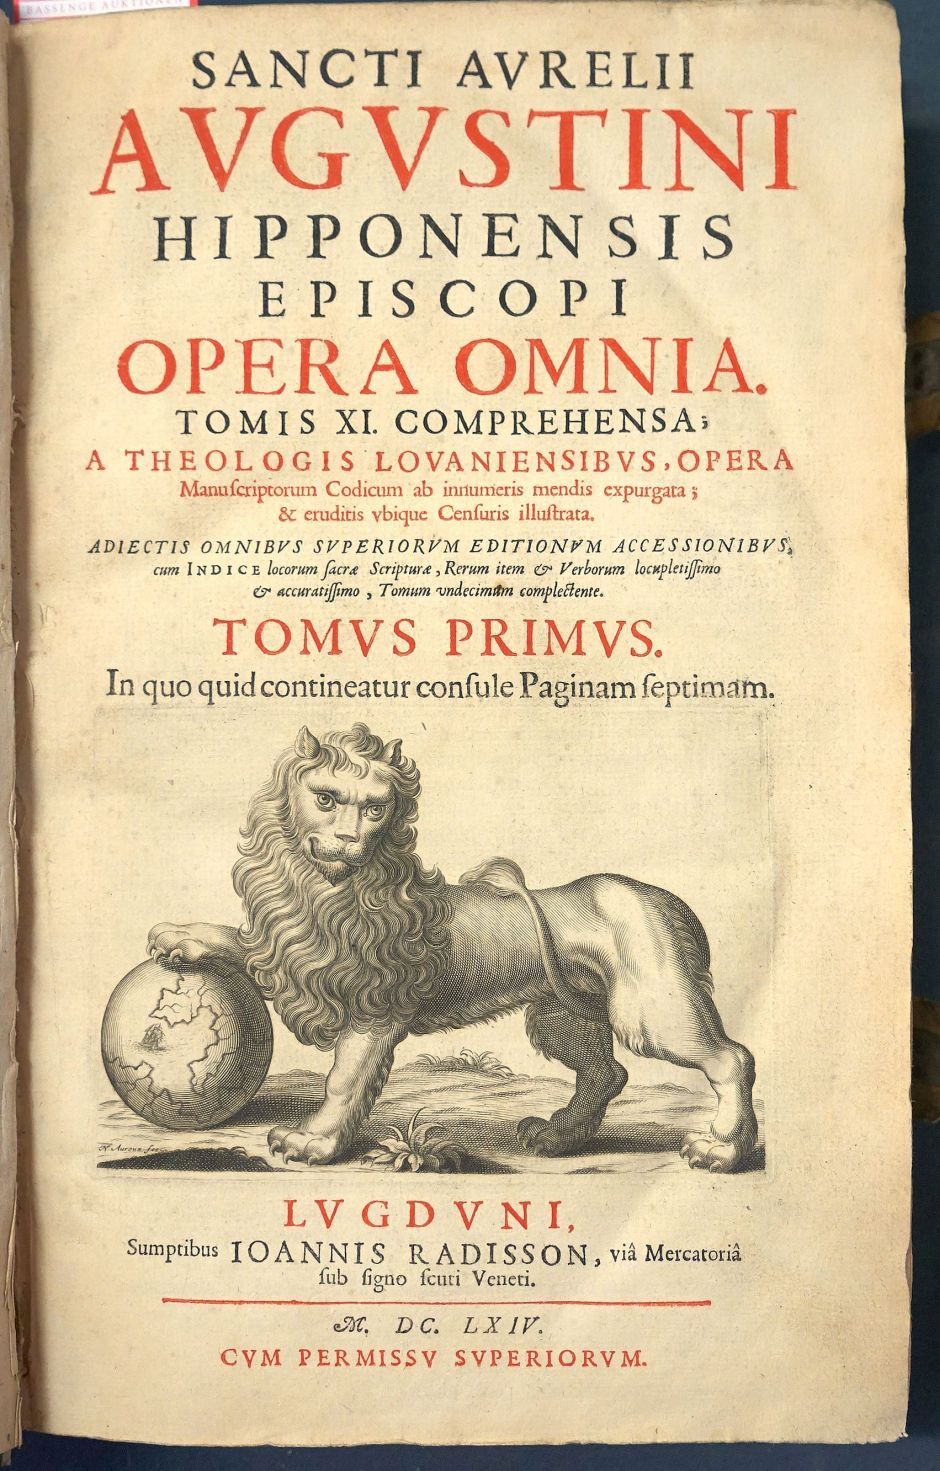 Lot 1250, Auction  115, Augustinus, Aurelius, Opera omnia